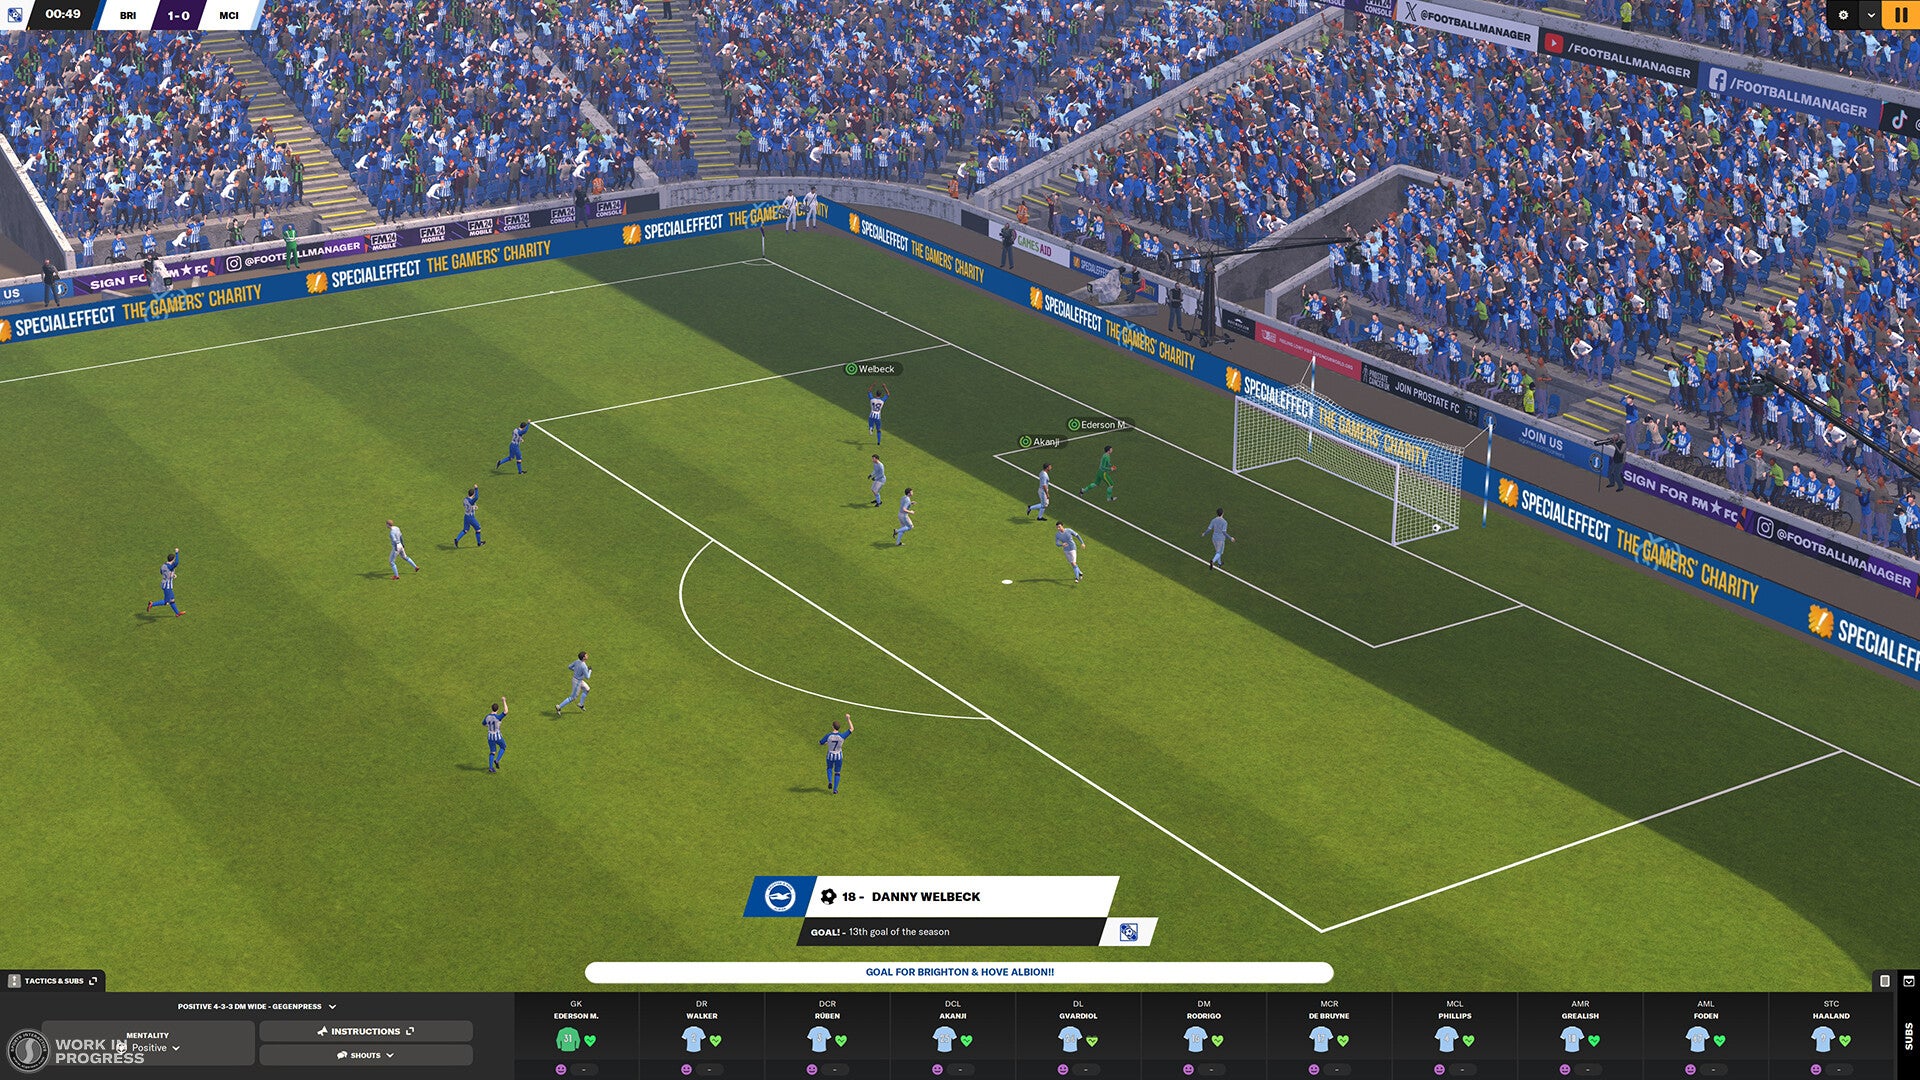 Capture d'écran officielle de FM24 du moteur de match montrant une équipe marquant un but devant une foule aux couleurs bleues et blanches.